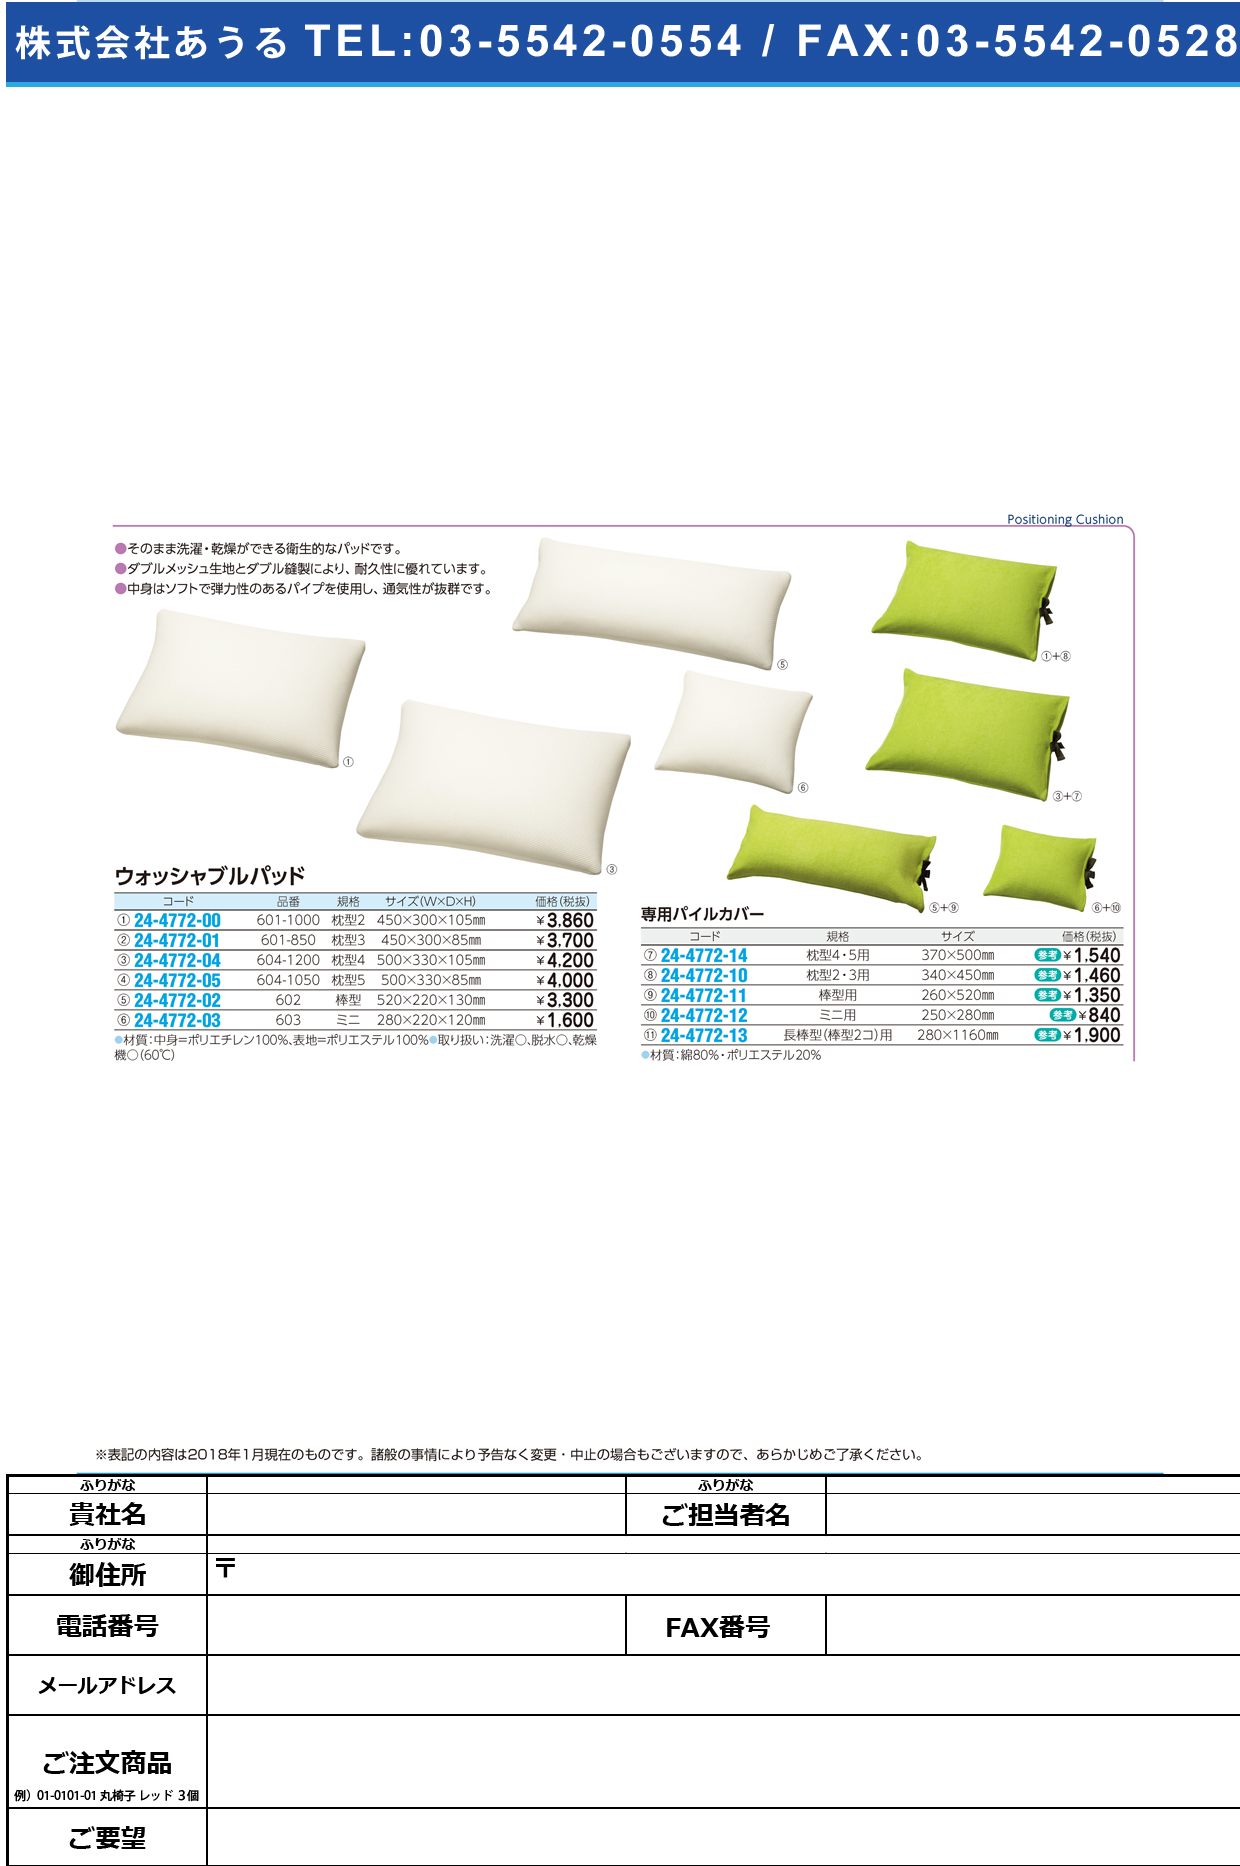 (24-4772-05)ウォッシャブルパッド枕型５ 604-1050(330X500X85) ｳｫｯｼｬﾌﾞﾙﾊﾟｯﾄﾞ【1個単位】【2018年カタログ商品】